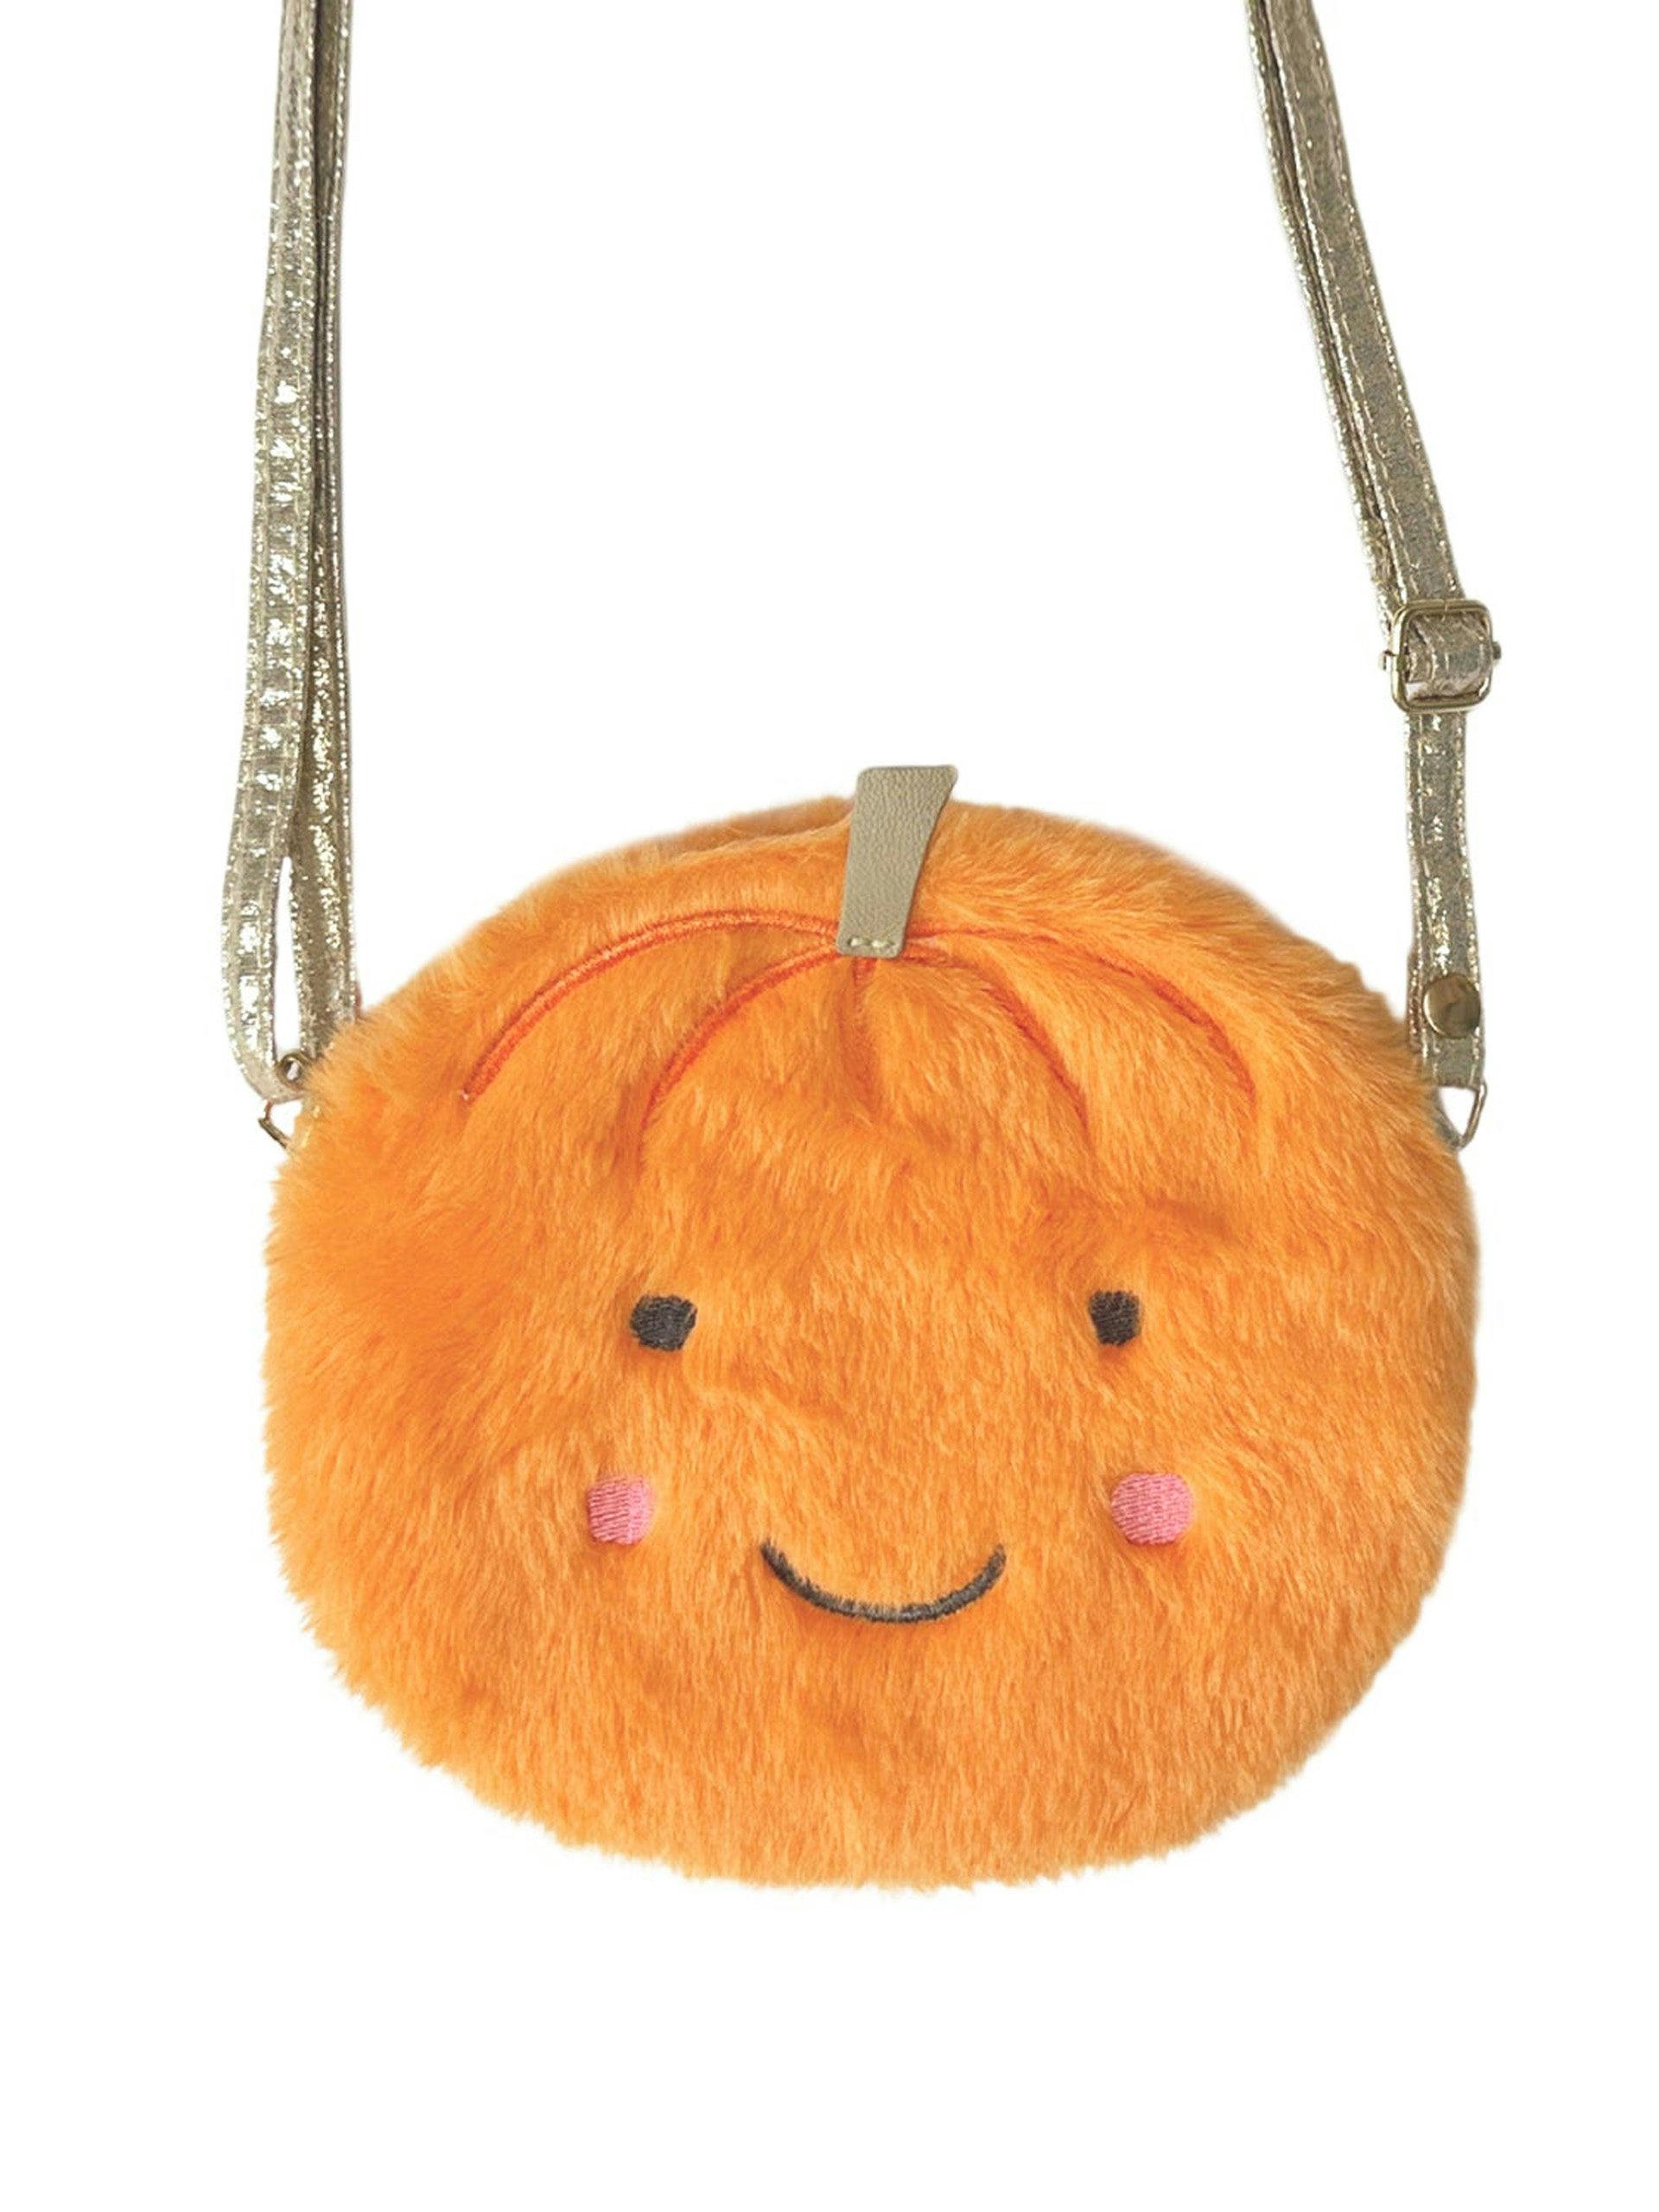 Little pumpkin bag